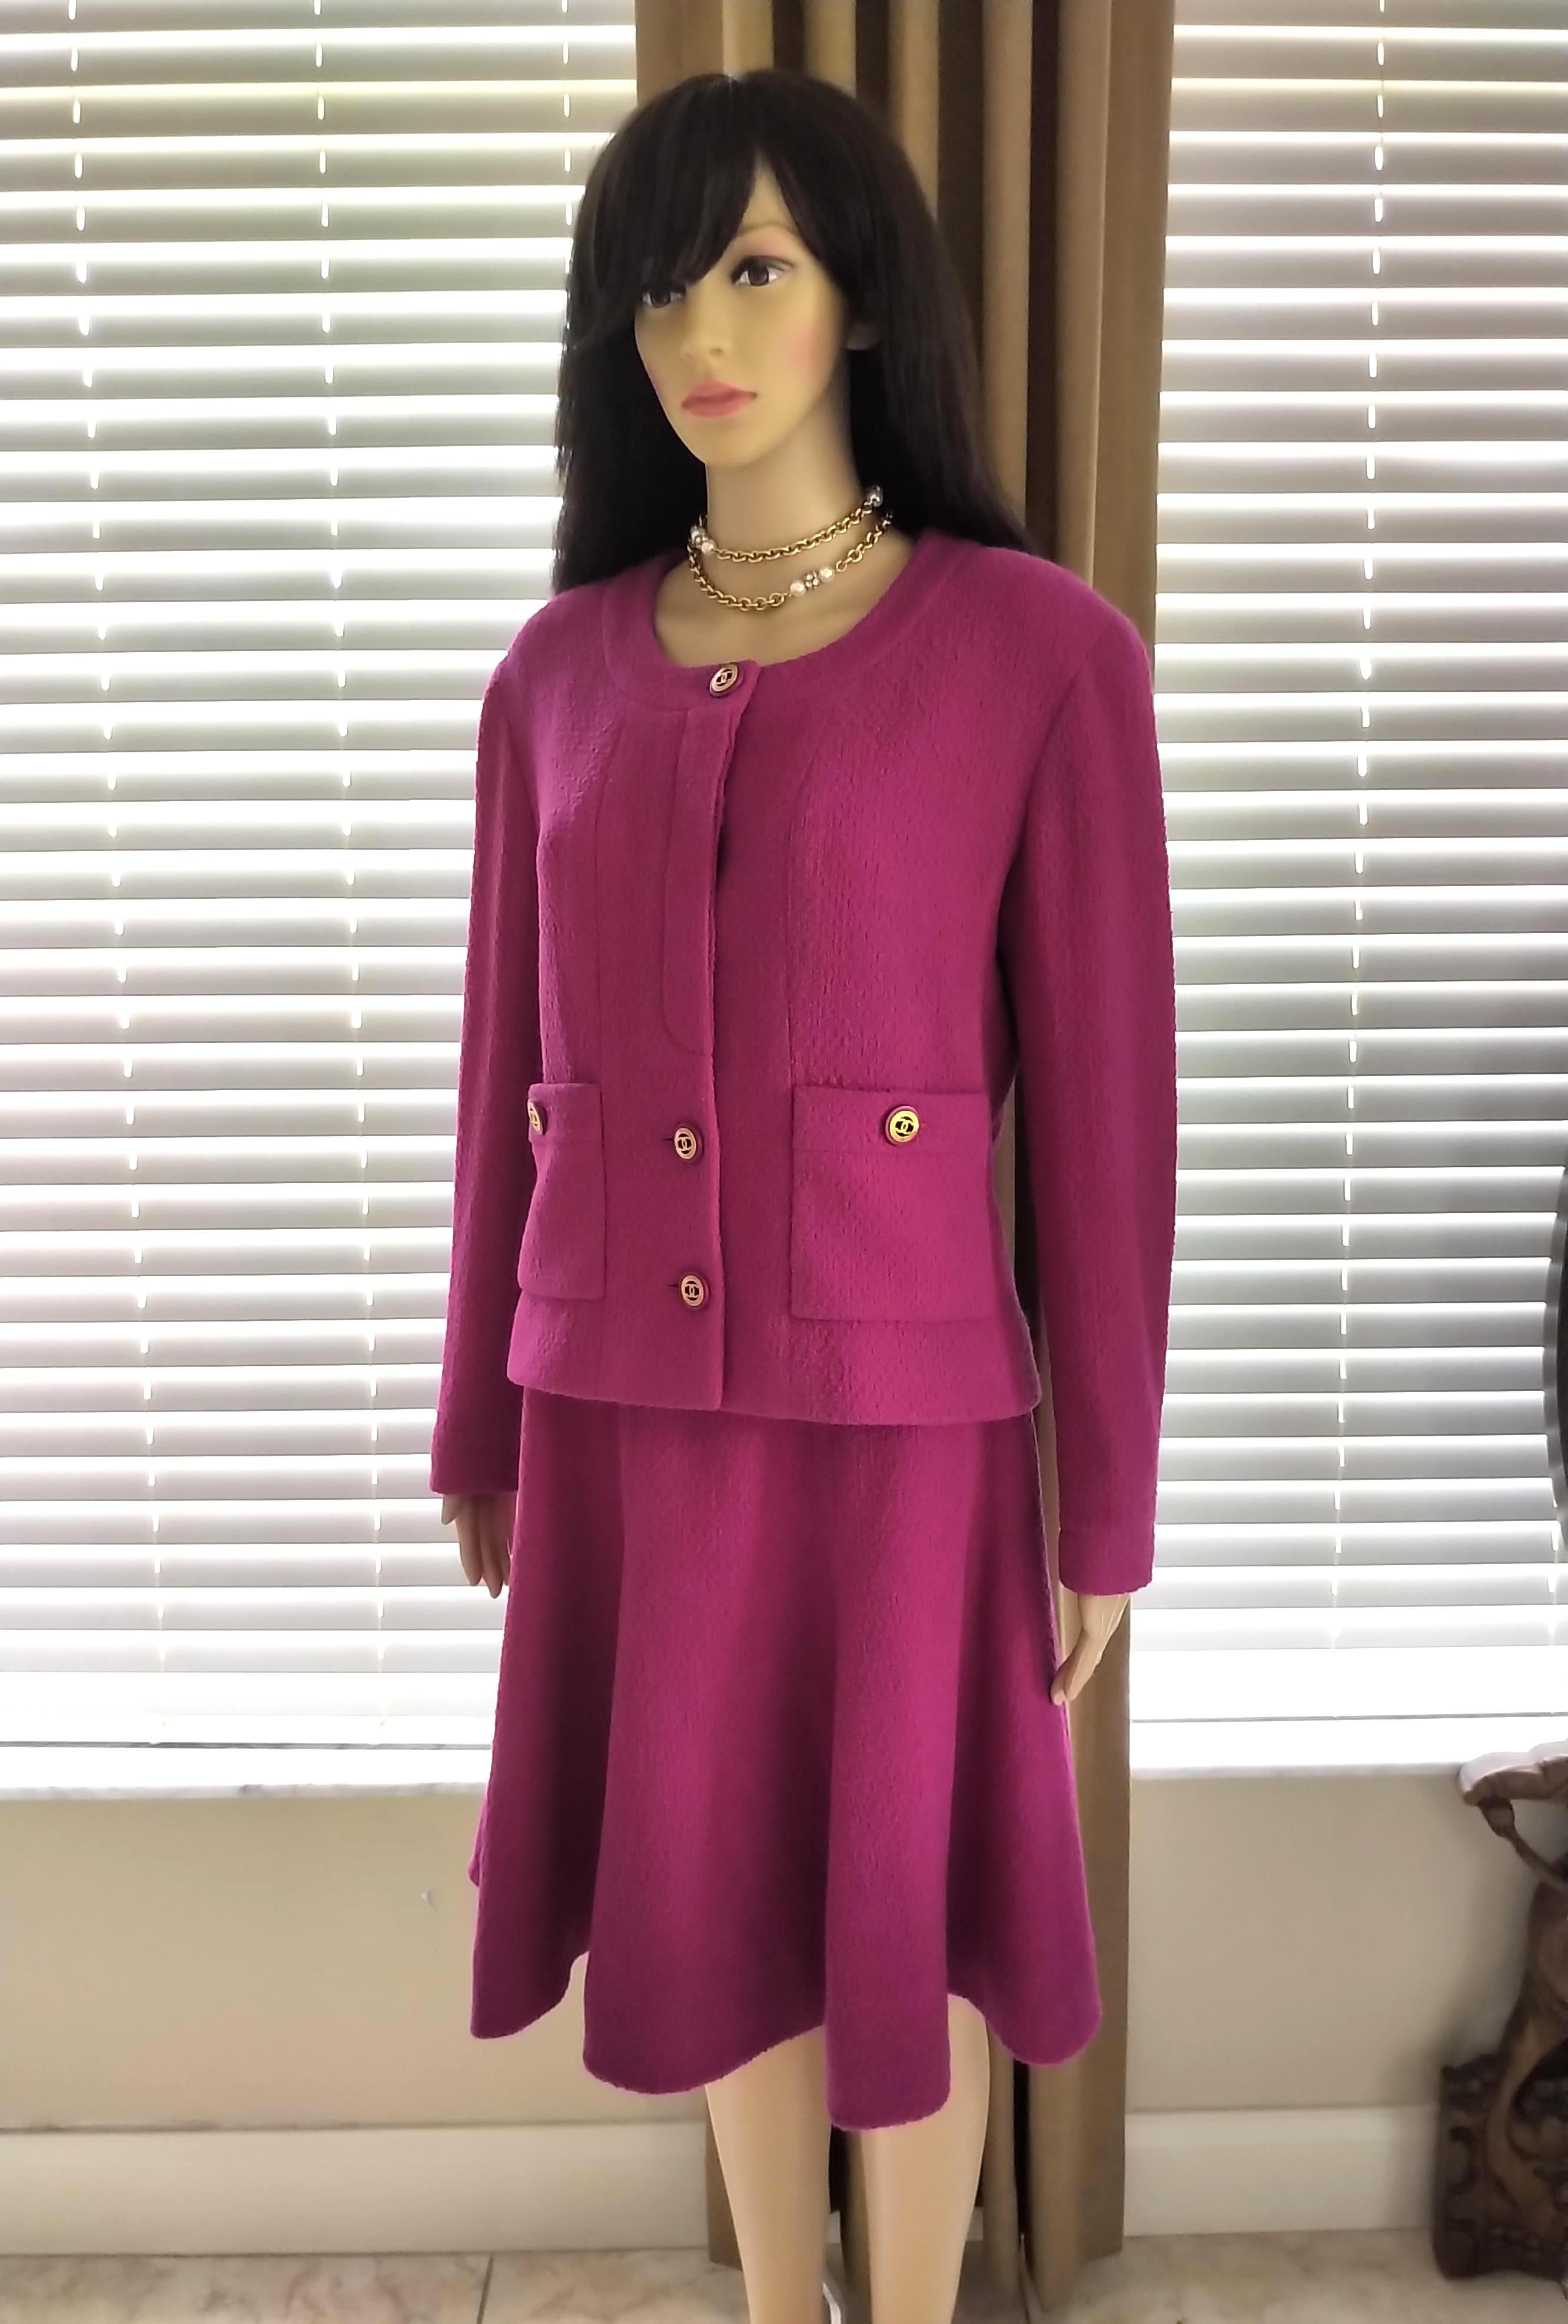 Rare Vintage Chanel 1980's CC Pink Violet Tweed Jacket Skirt Suit FR 40/ US 6 8 For Sale 4